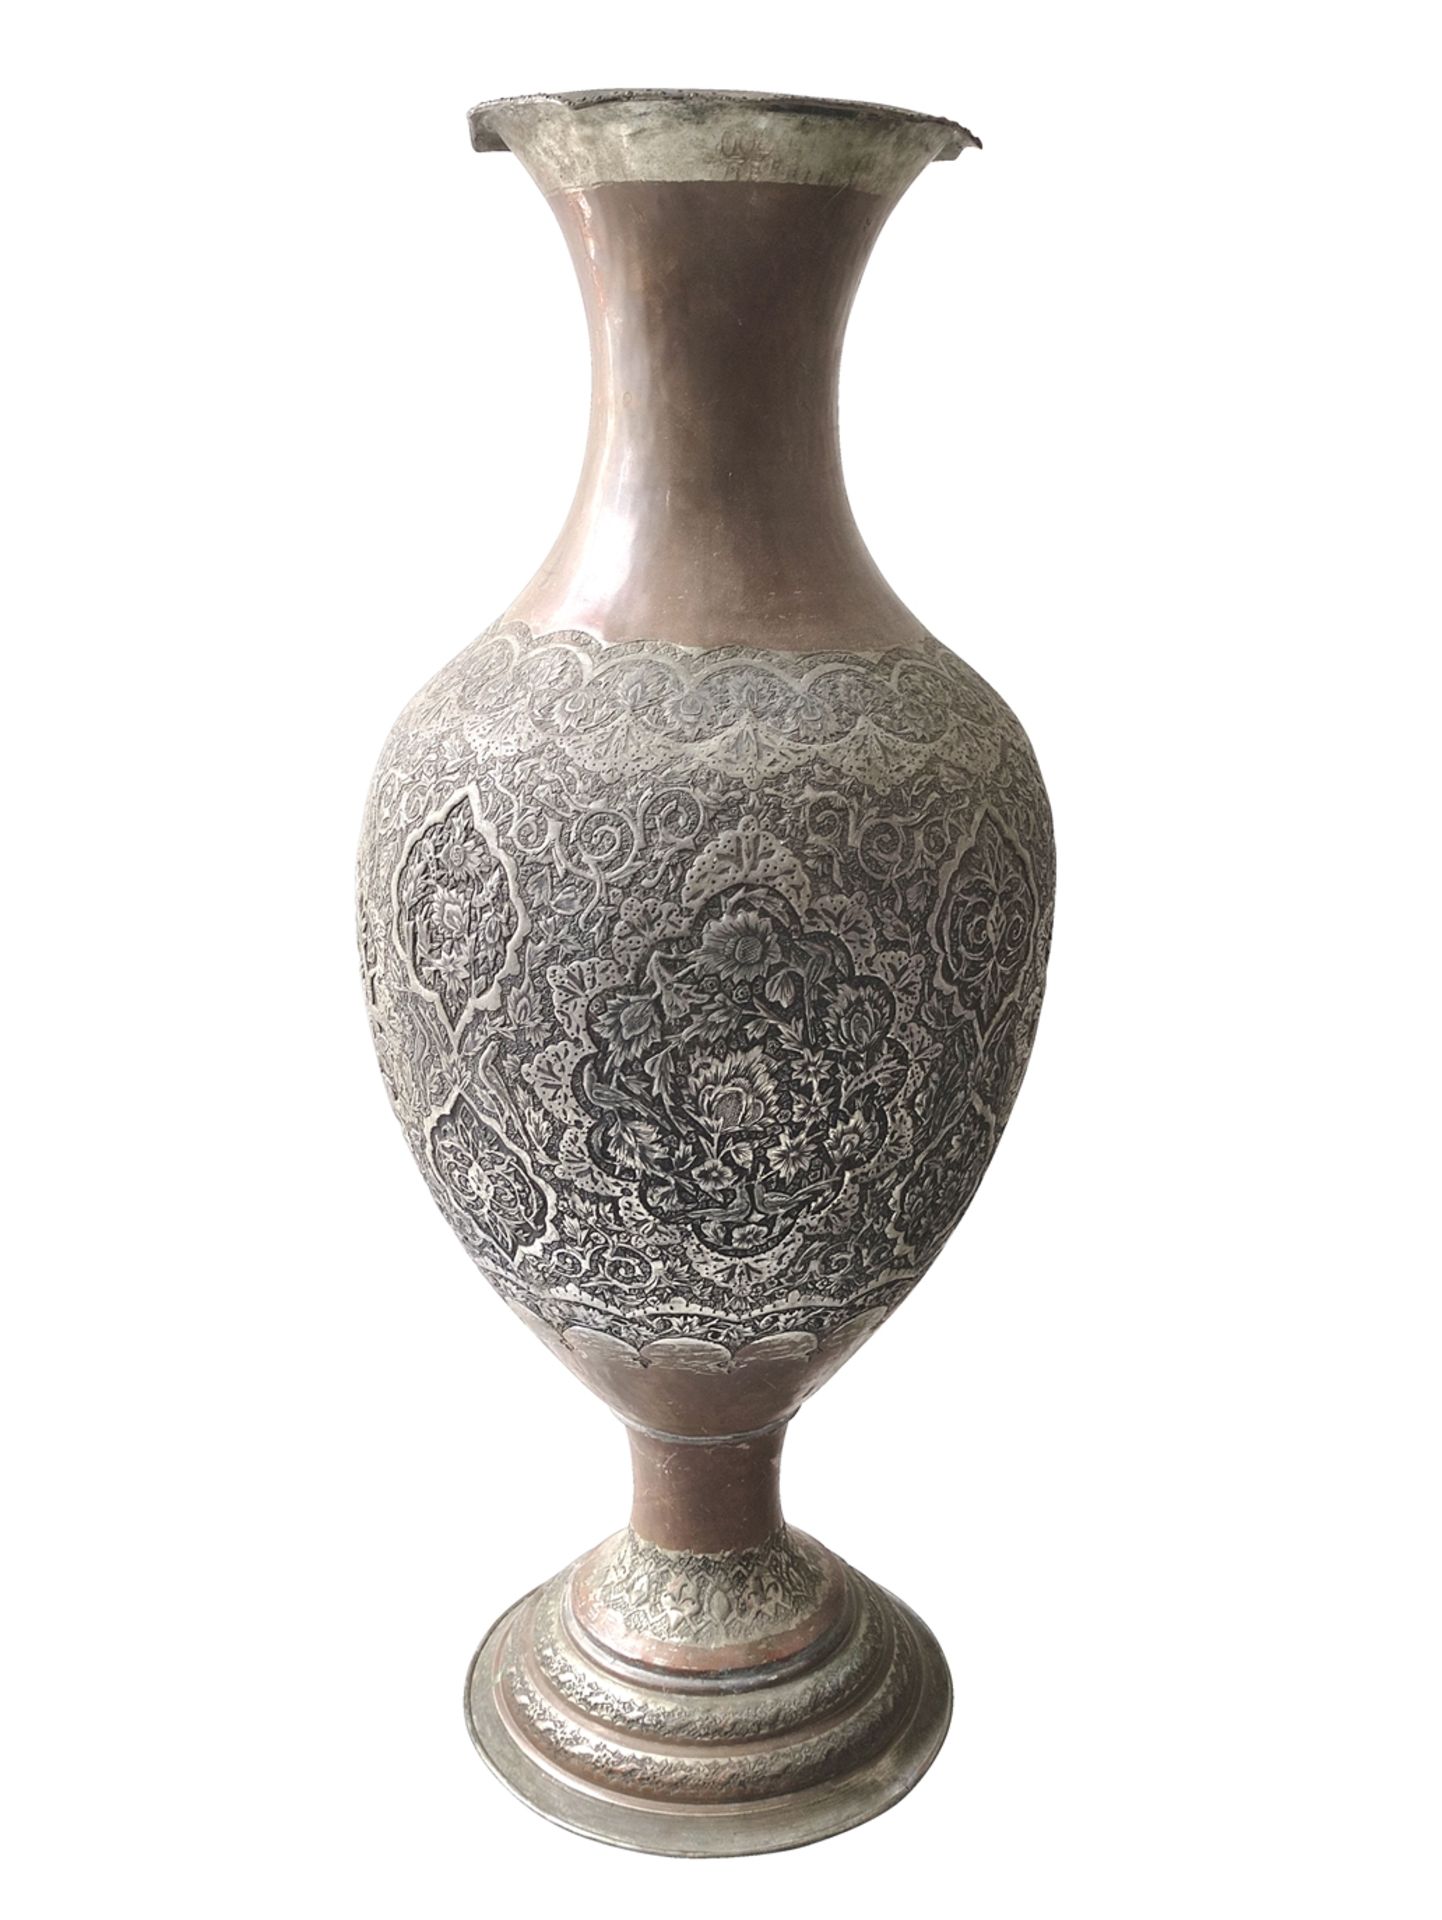 Große Vase, gebaucht mit ausgestelltem Rand, unterhalb verjüngt auf rundem Stand, feiner ziselierte